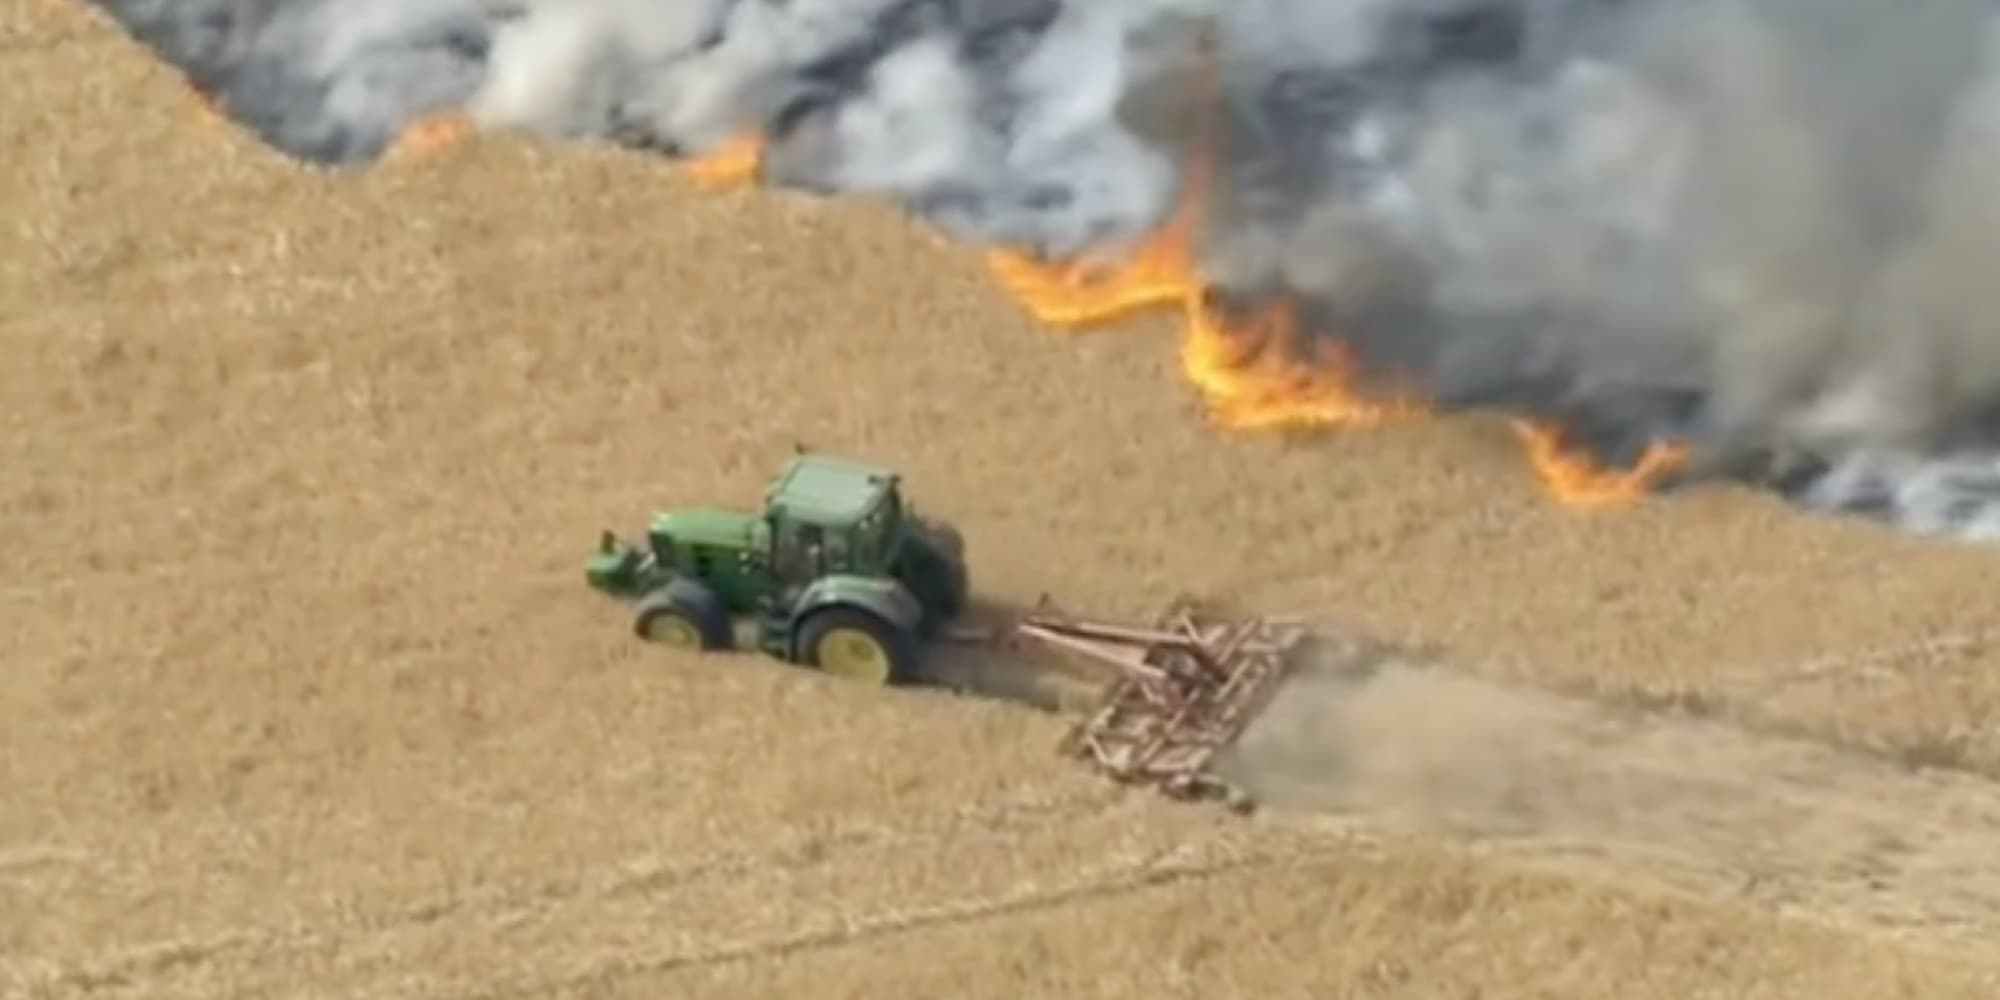 Ατρόμητος αγρότης στη Βρετανία έσωσε το χωράφι του από τη φωτιά δημιουργώντας αντιπυρική ζώνη με το τρακτέρ